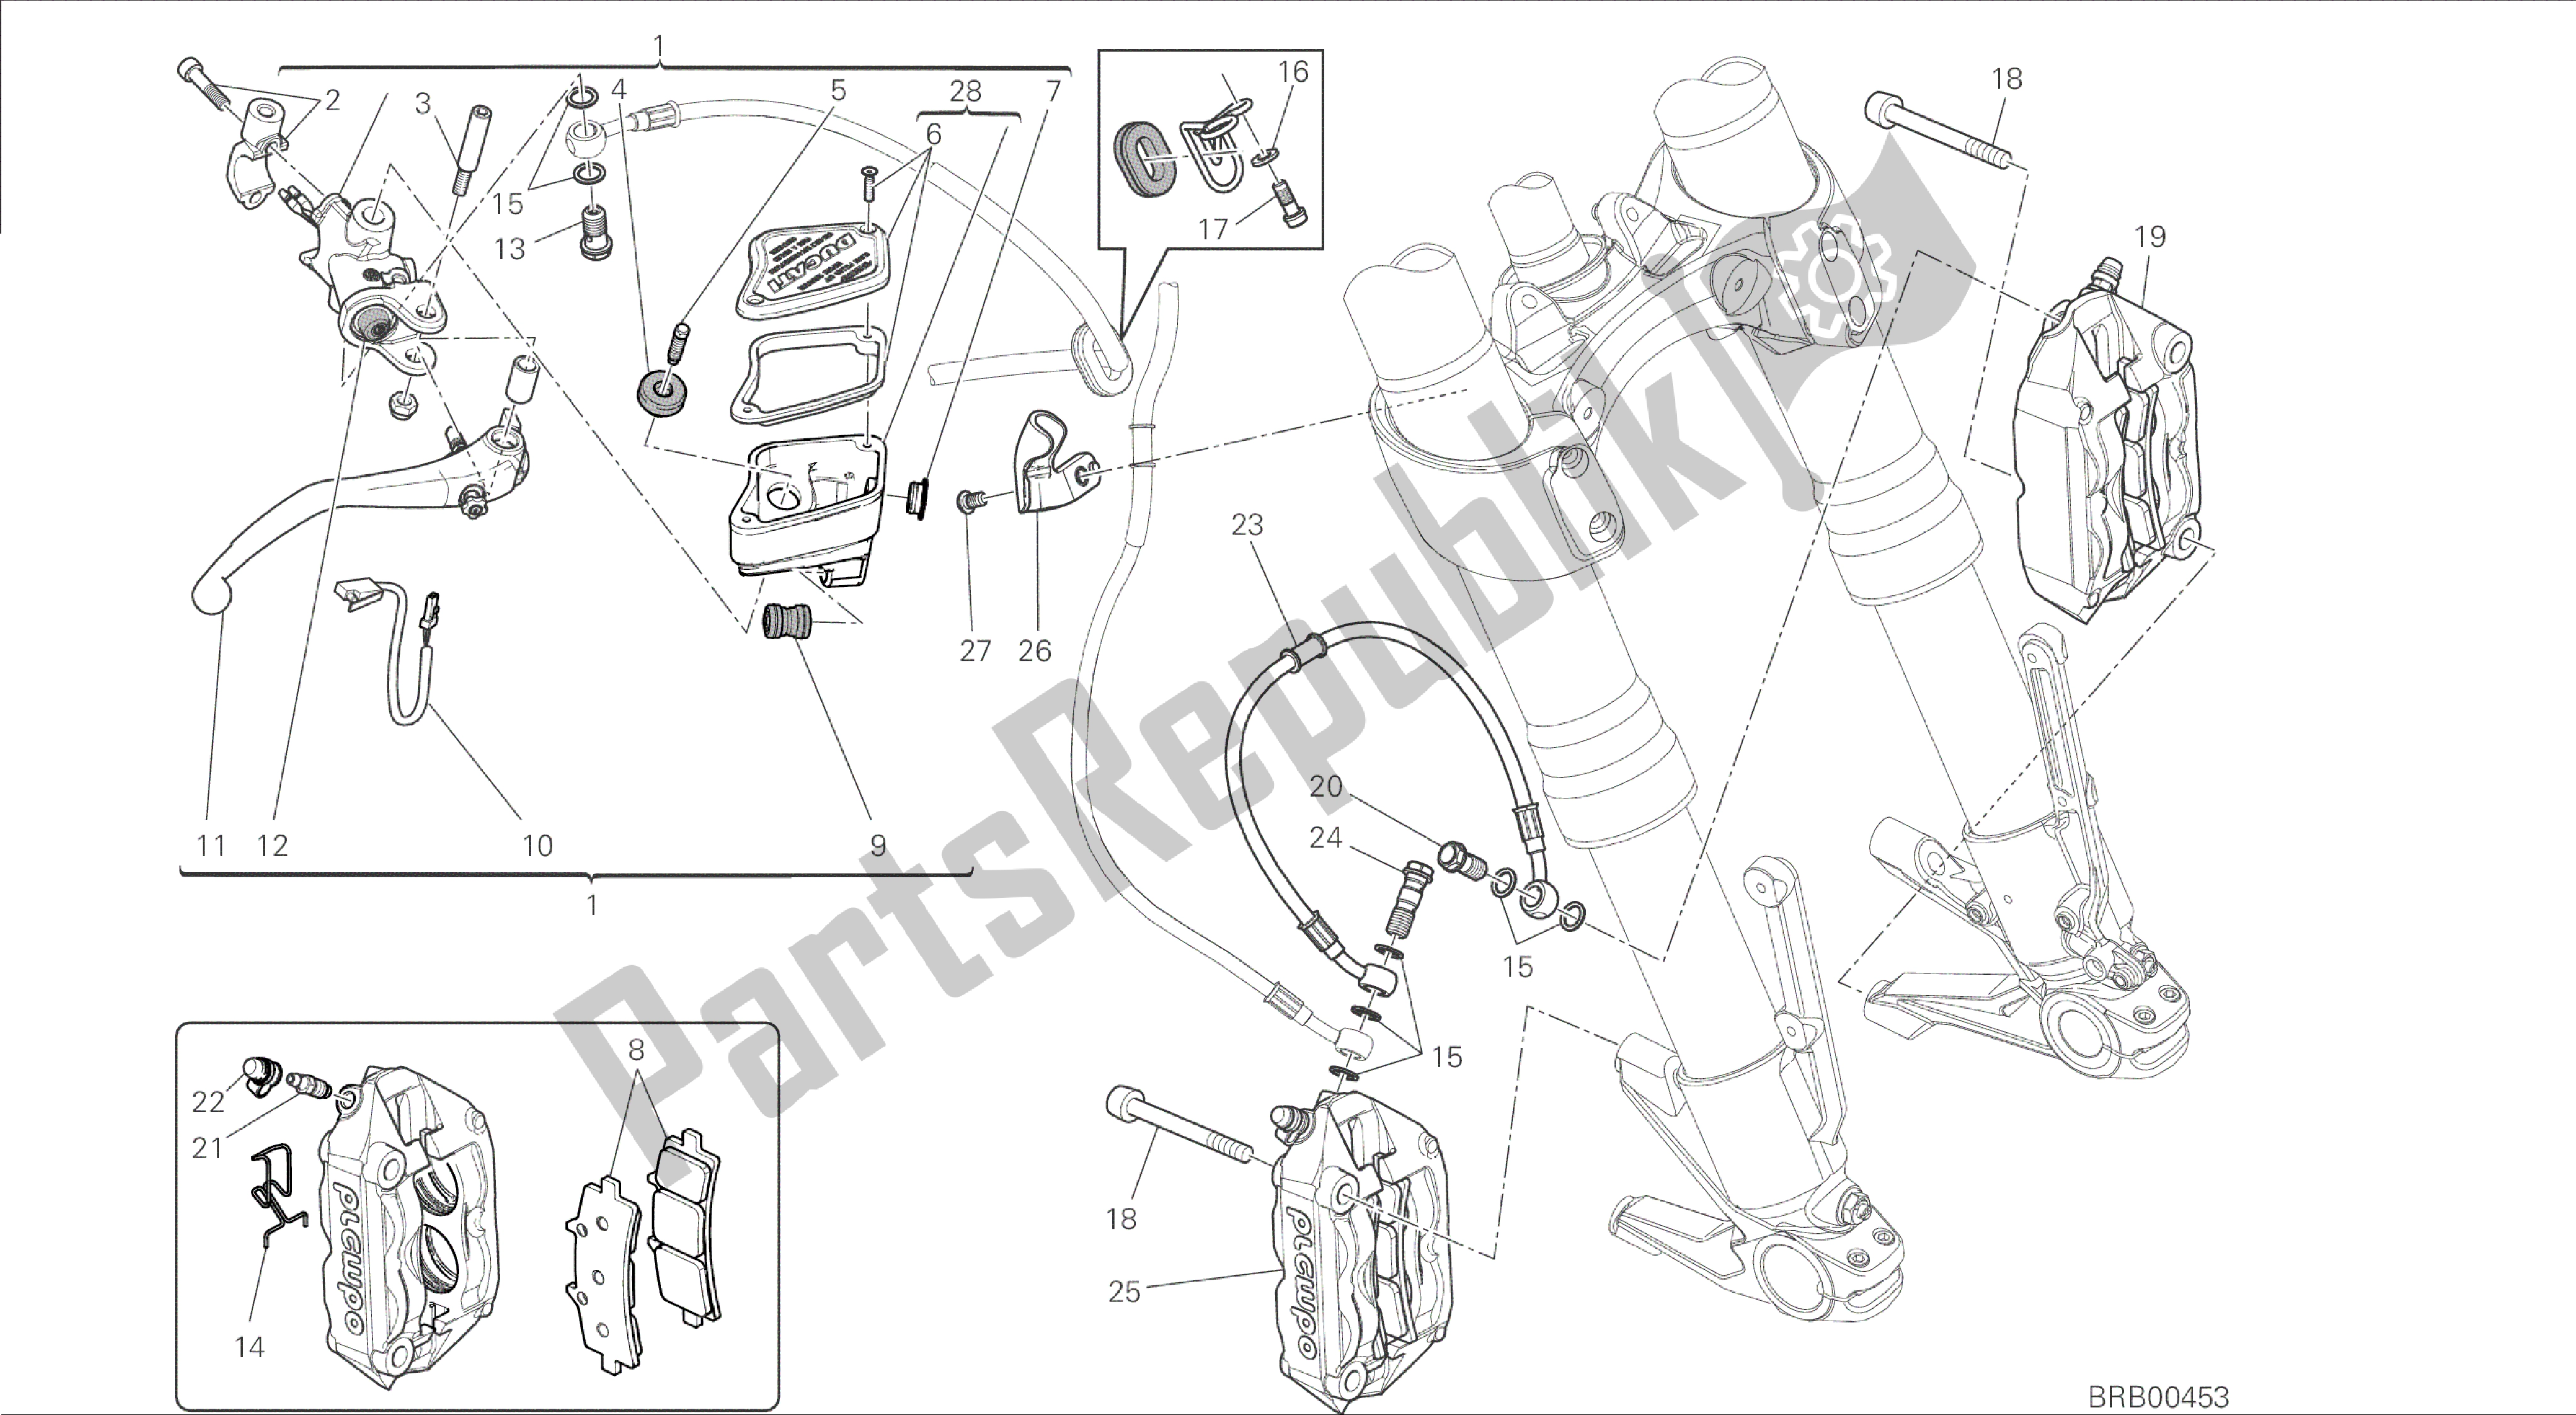 Alle onderdelen voor de Tekening 024 - Voorremsysteem [mod: Dvl] Groepsframe van de Ducati Diavel 1200 2015